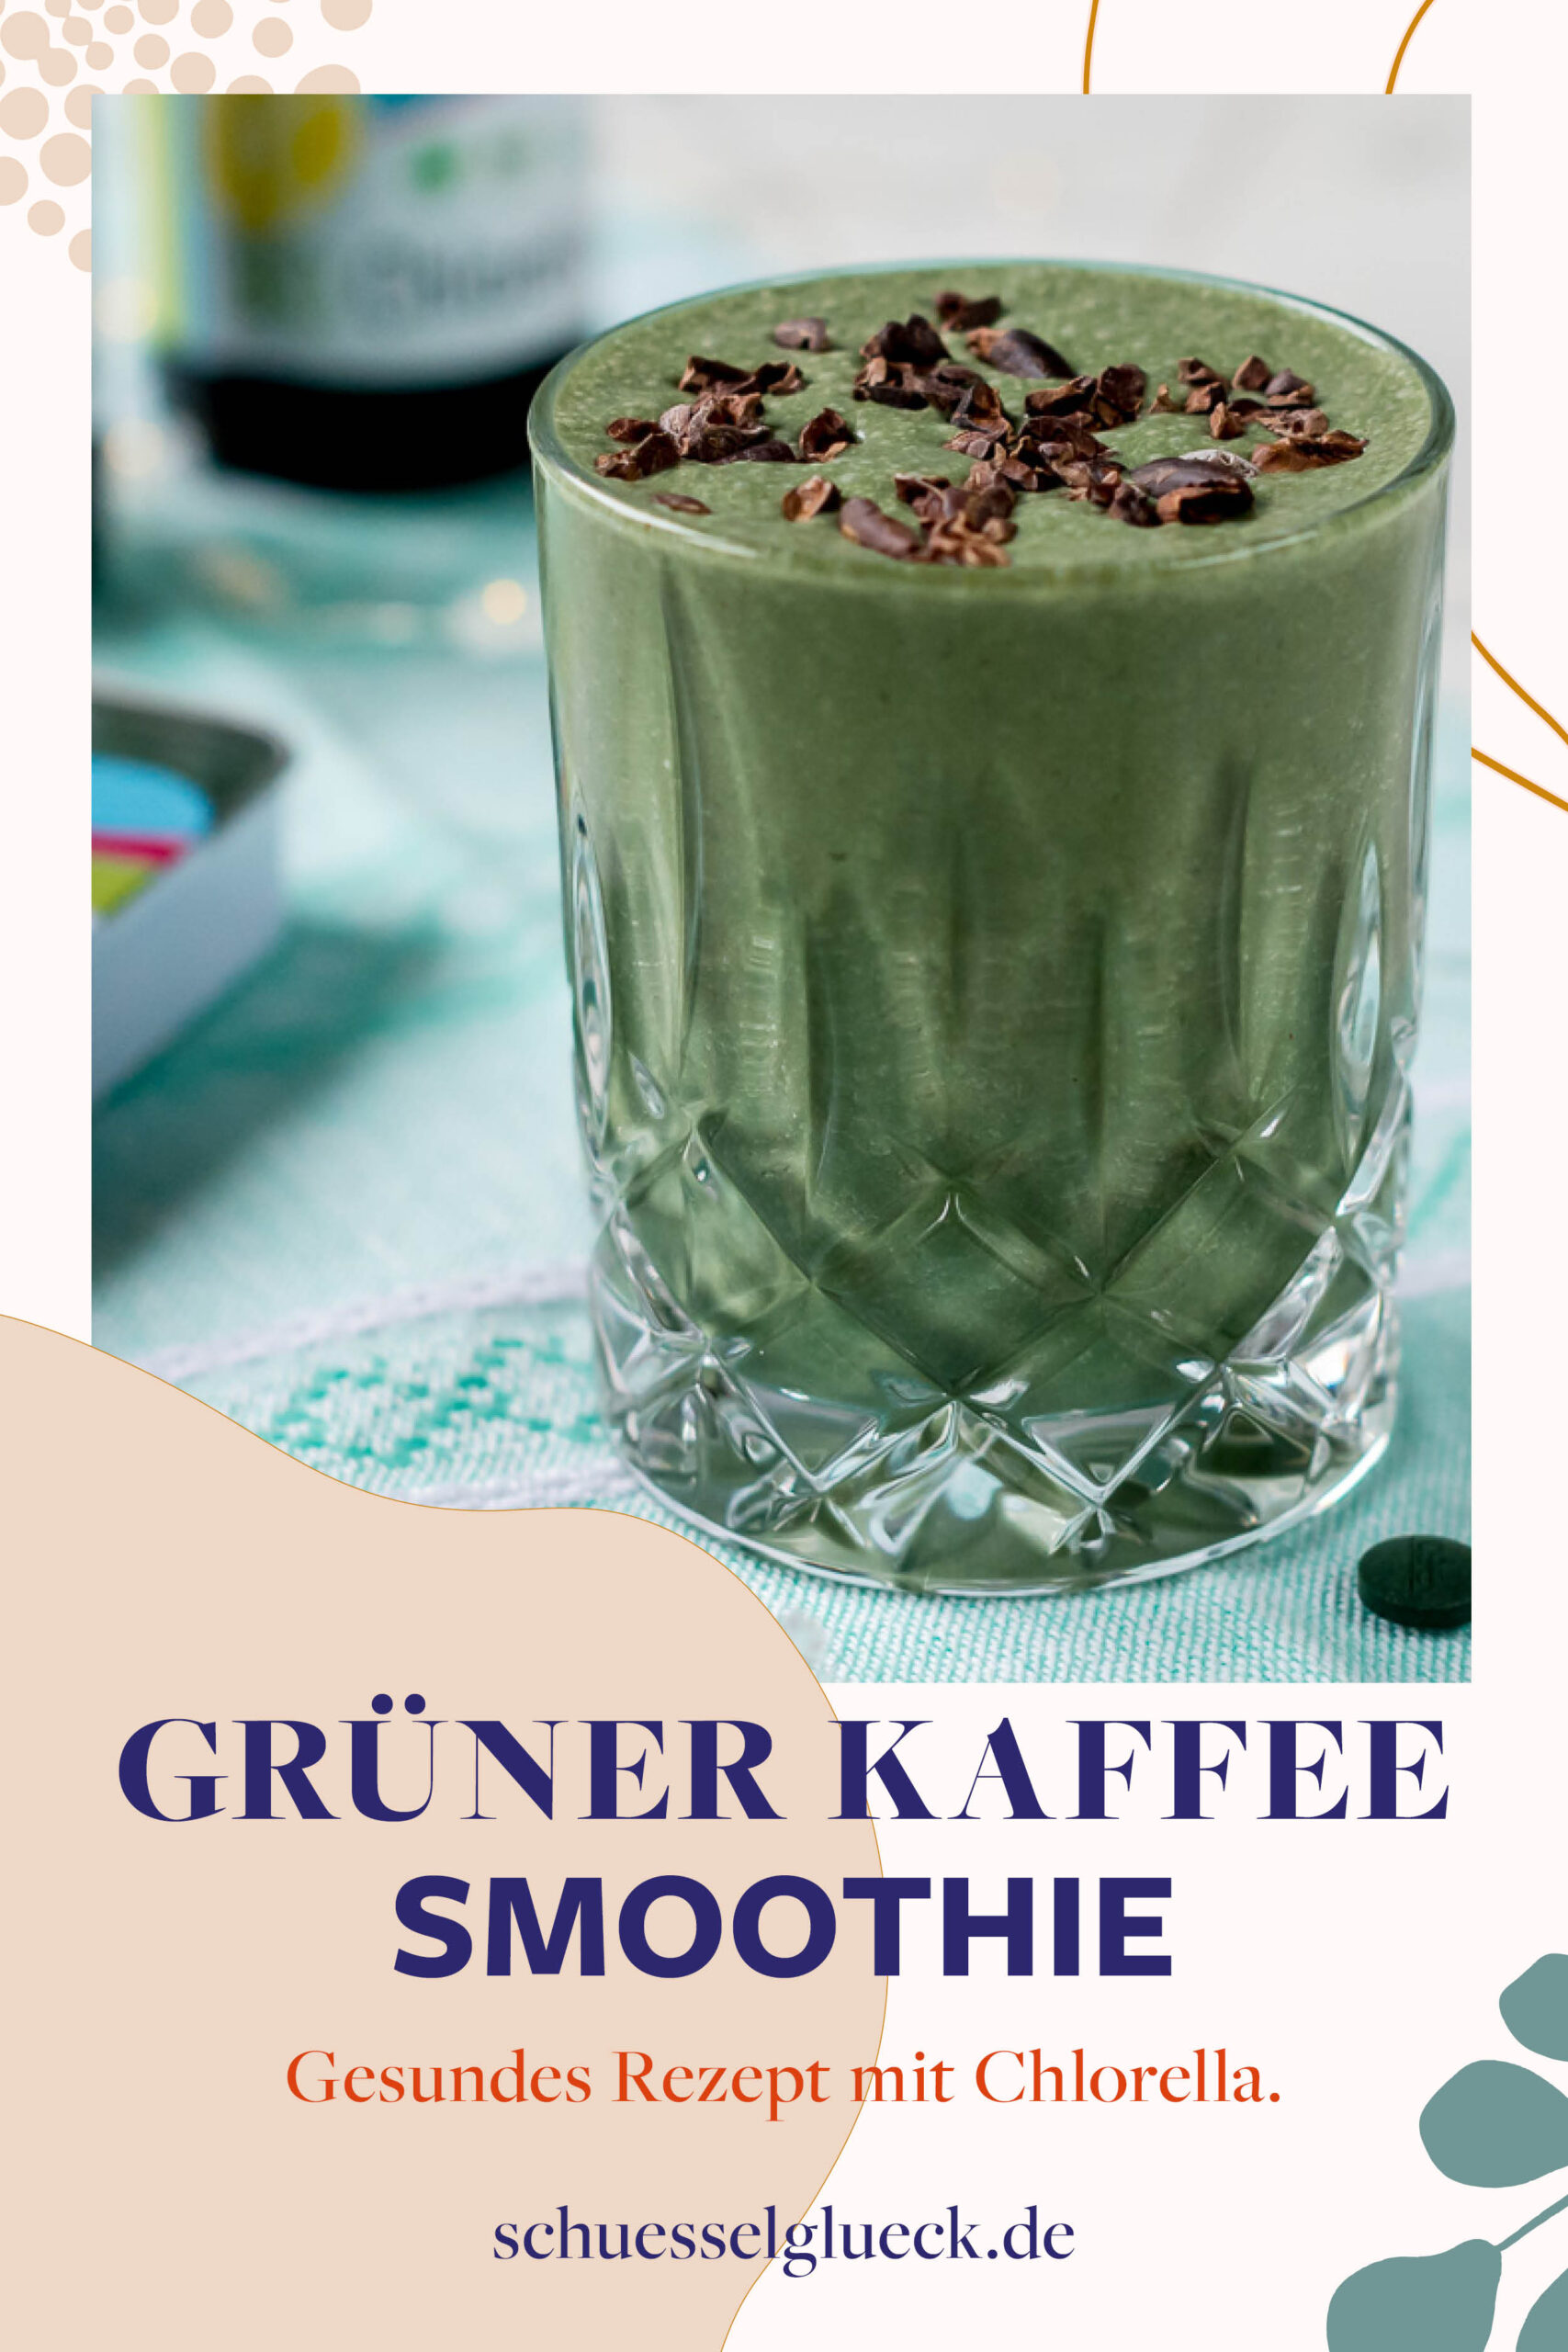 Grüner Kaffee Shake mit Chlorella und Spirulina + alles was Du über das Superfood aus dem Wasser wissen musst